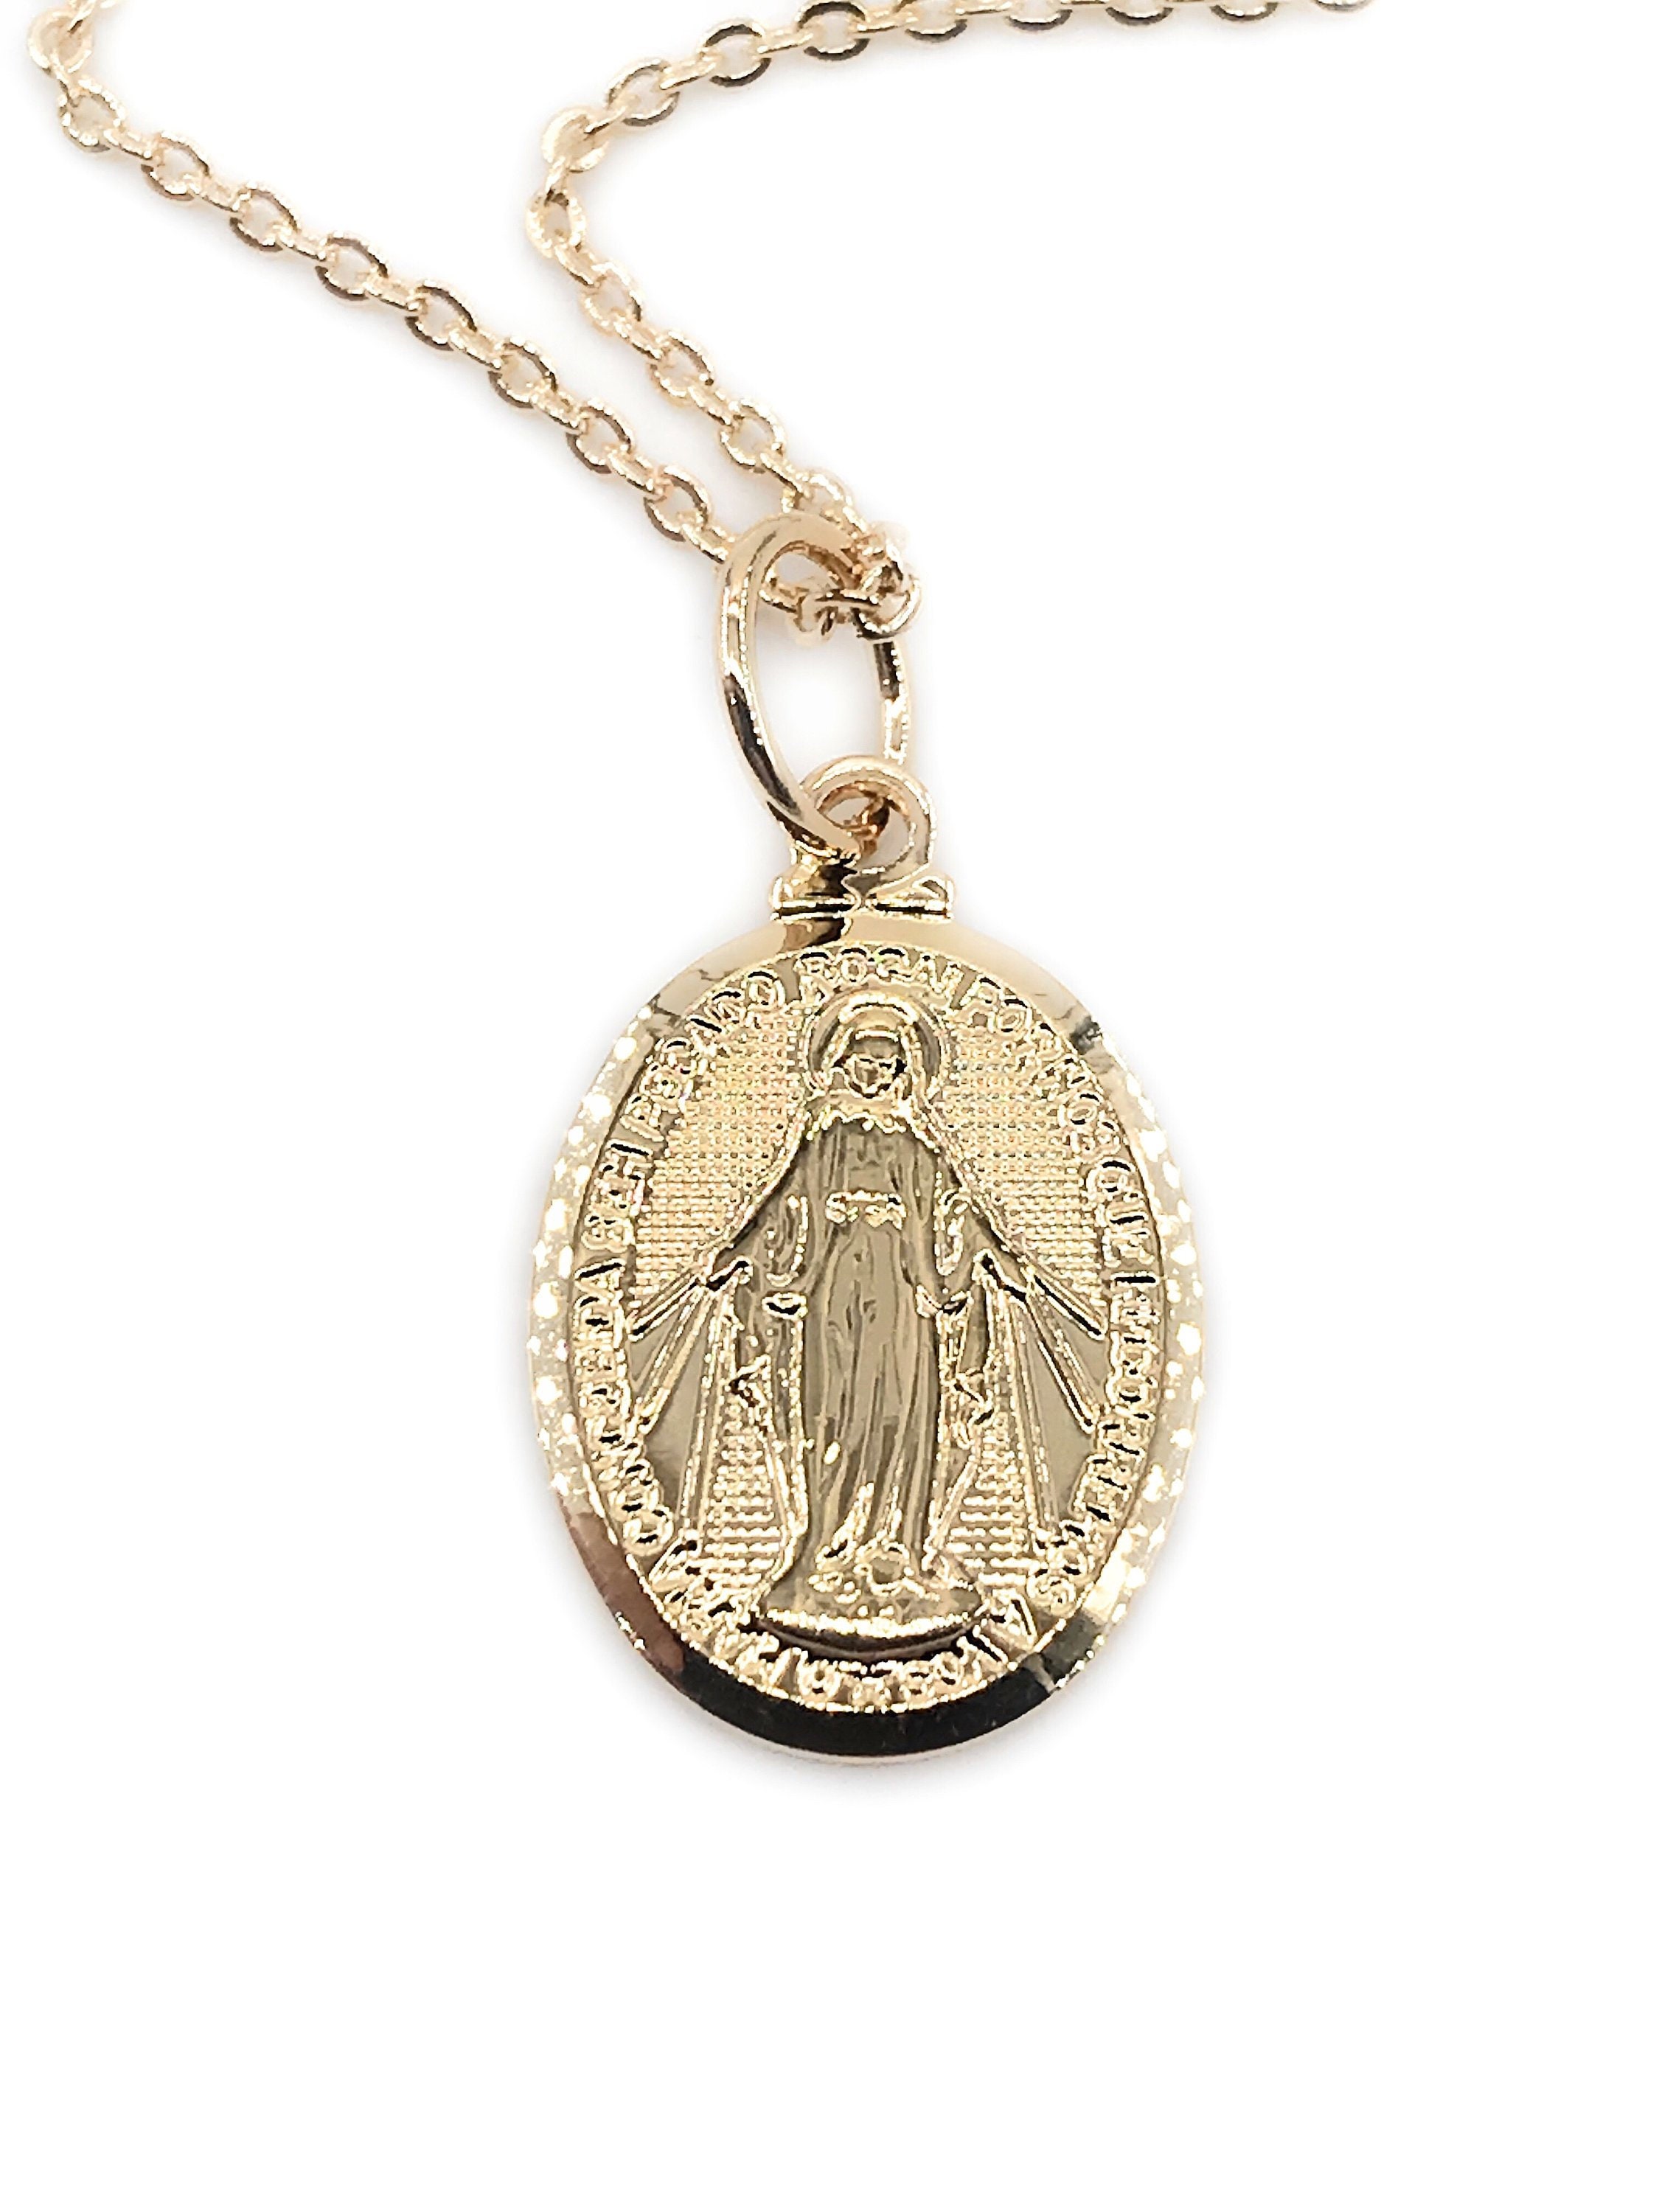 Colgante de la Virgen María con Medalla Milagrosa de oro blanco